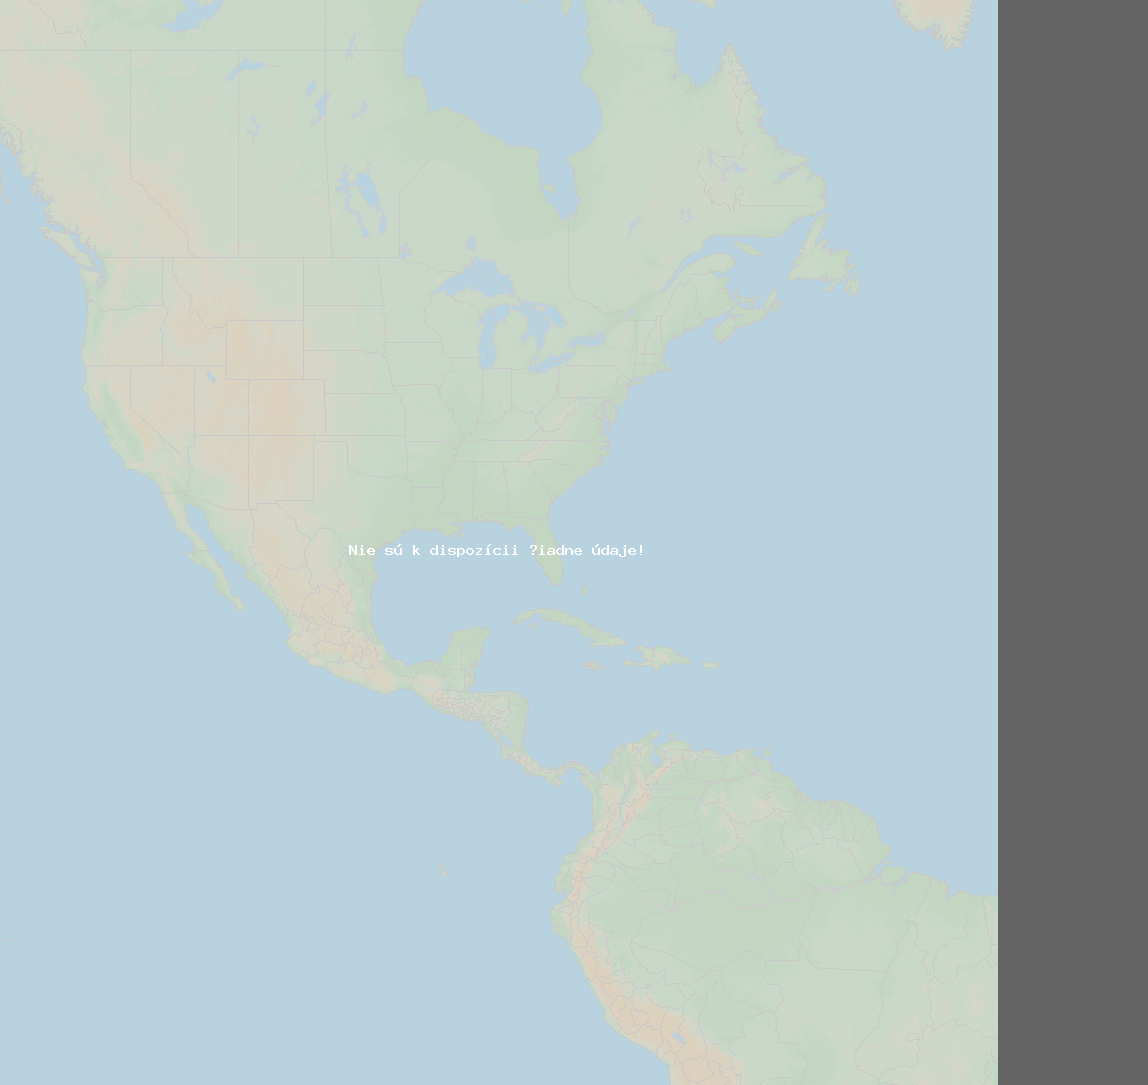 Pomer bleskov (Stanica Baie-Comeau QC) North America 2019 Júl